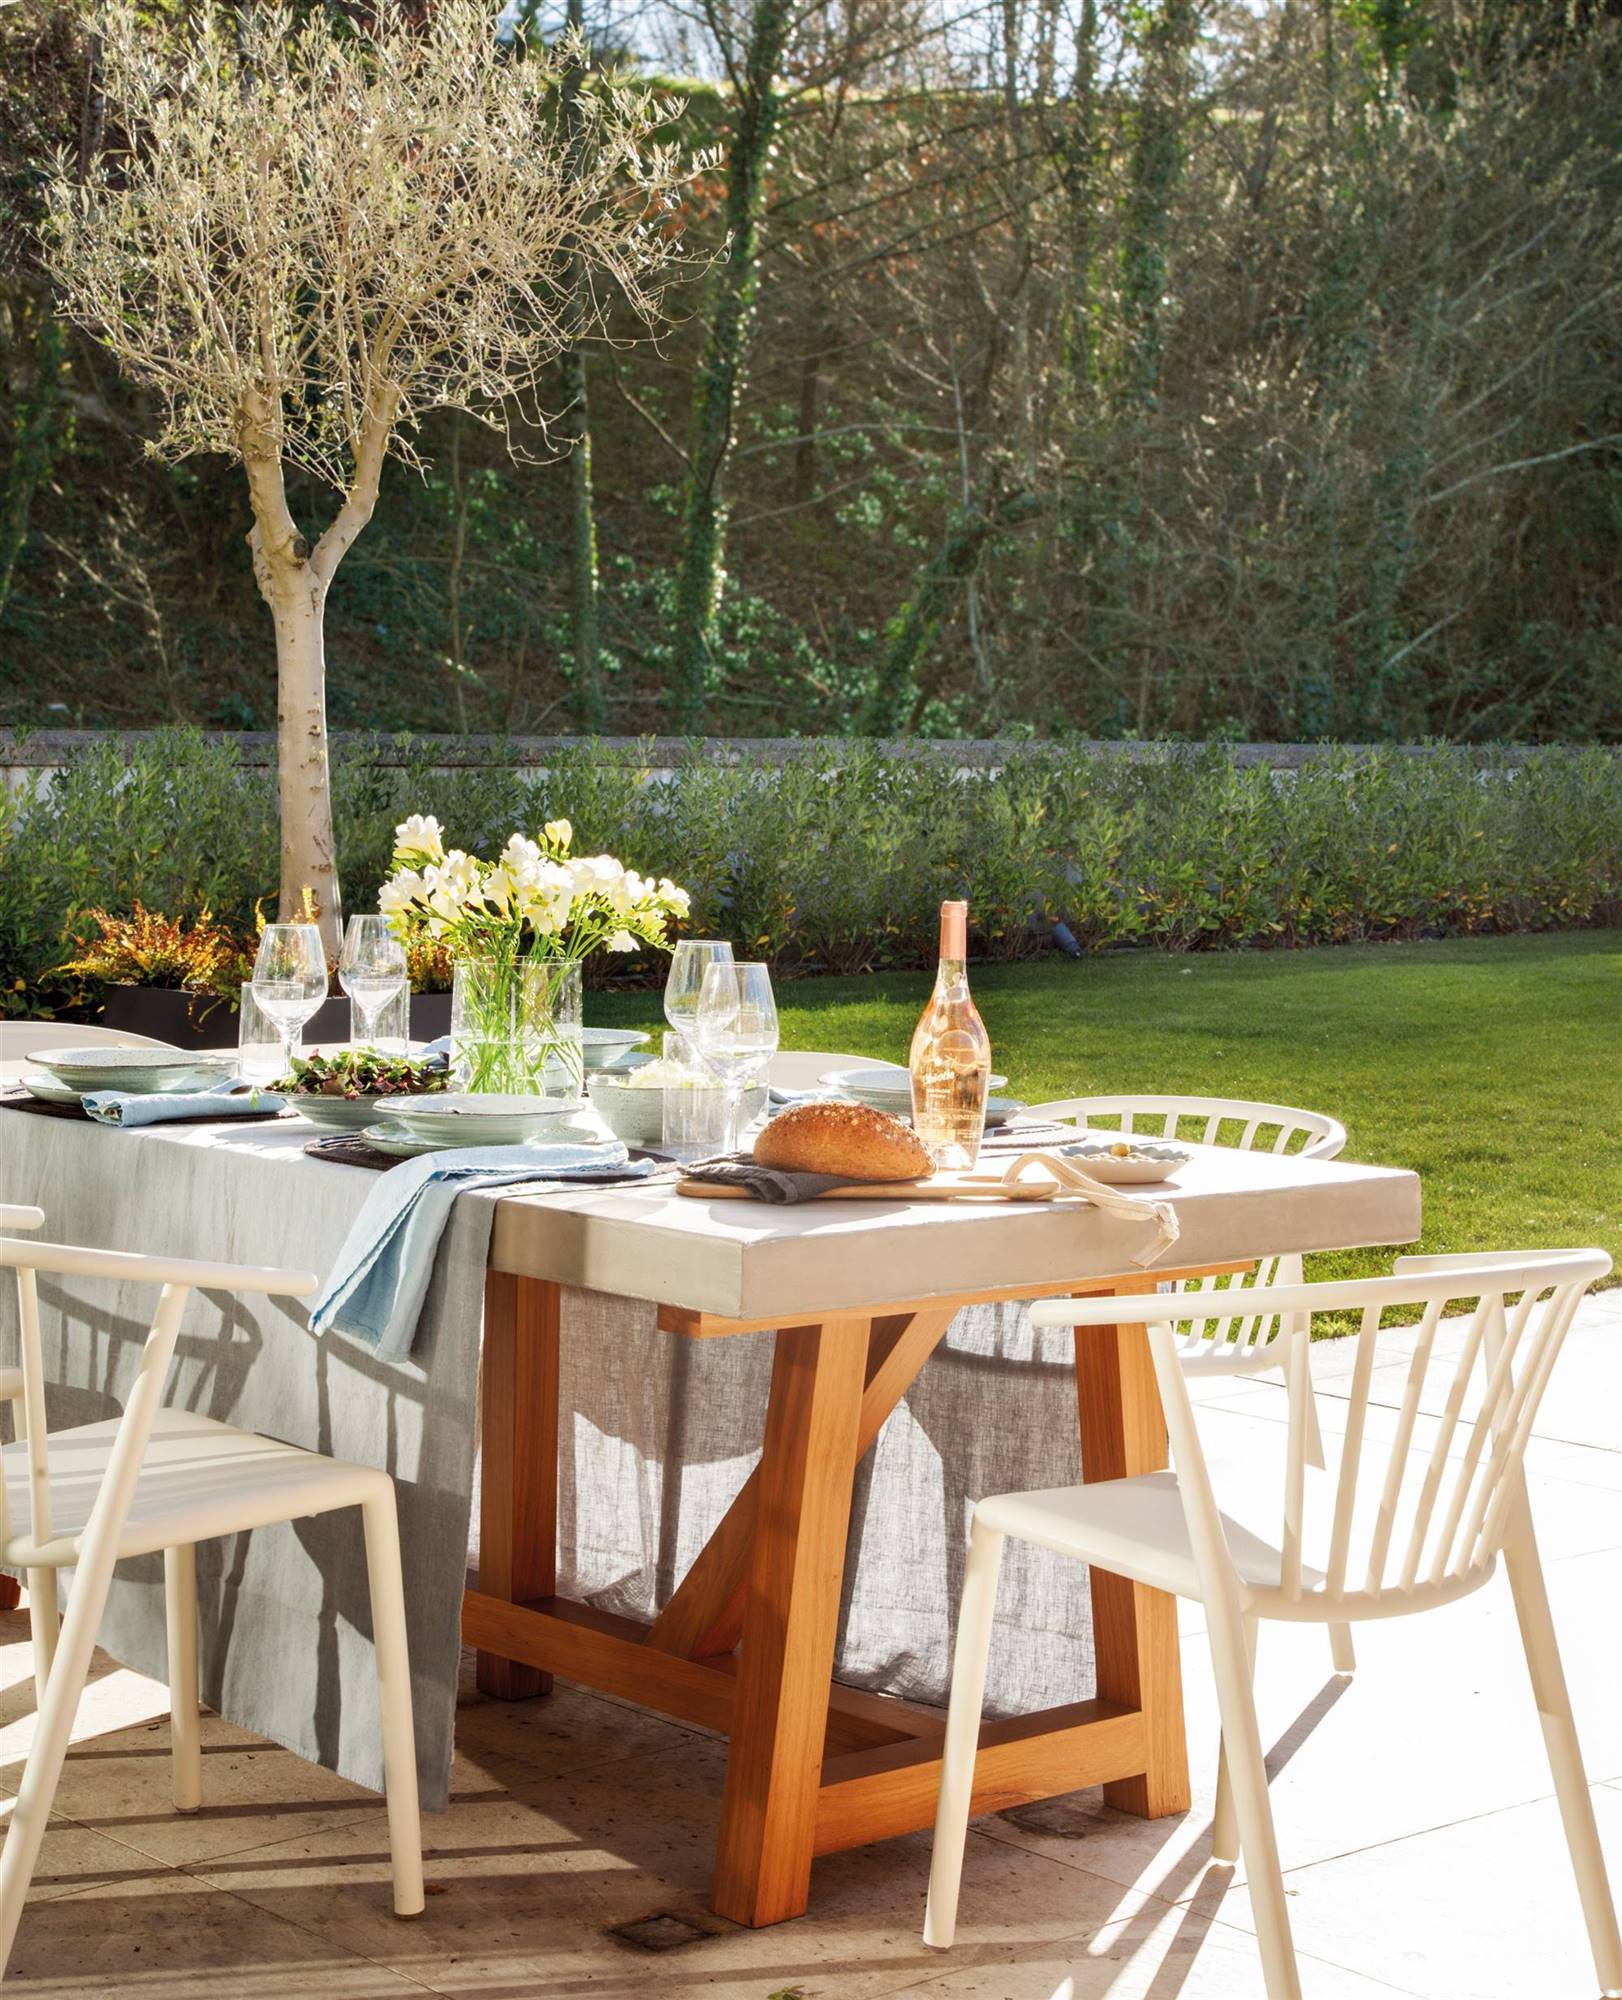 Mesas de jardín: comedor, centro o auxiliares para decorar tu con estilo (con shopping)